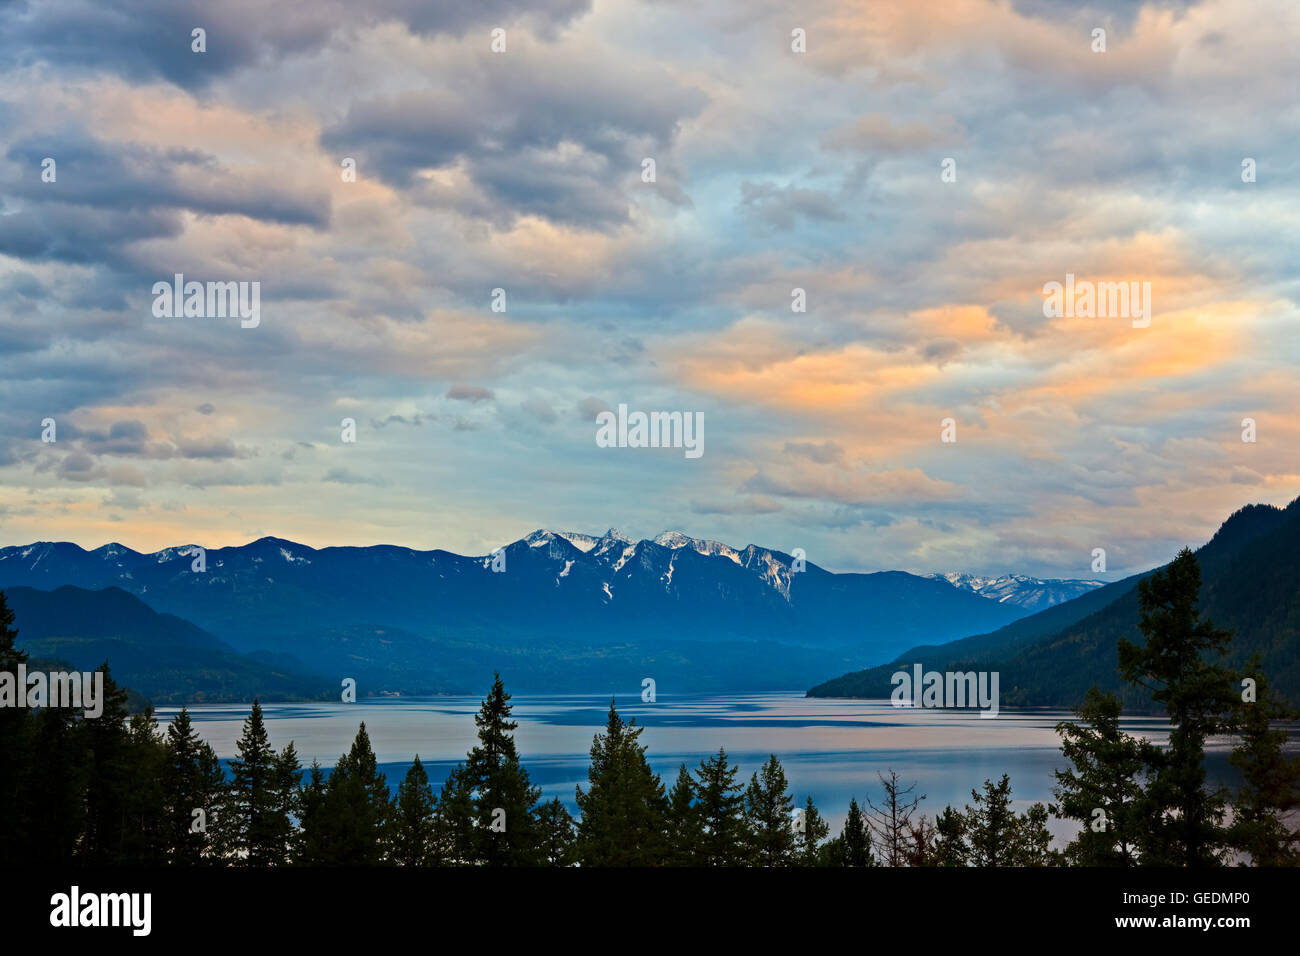 Geografia / viaggi, Canada, British Columbia, Kootenay centrale H, Slocan lago al tramonto orlata da Valhalla Parco Provinciale e montagne, Slocan Valley, Central Kootenay, British Columbia, Foto Stock